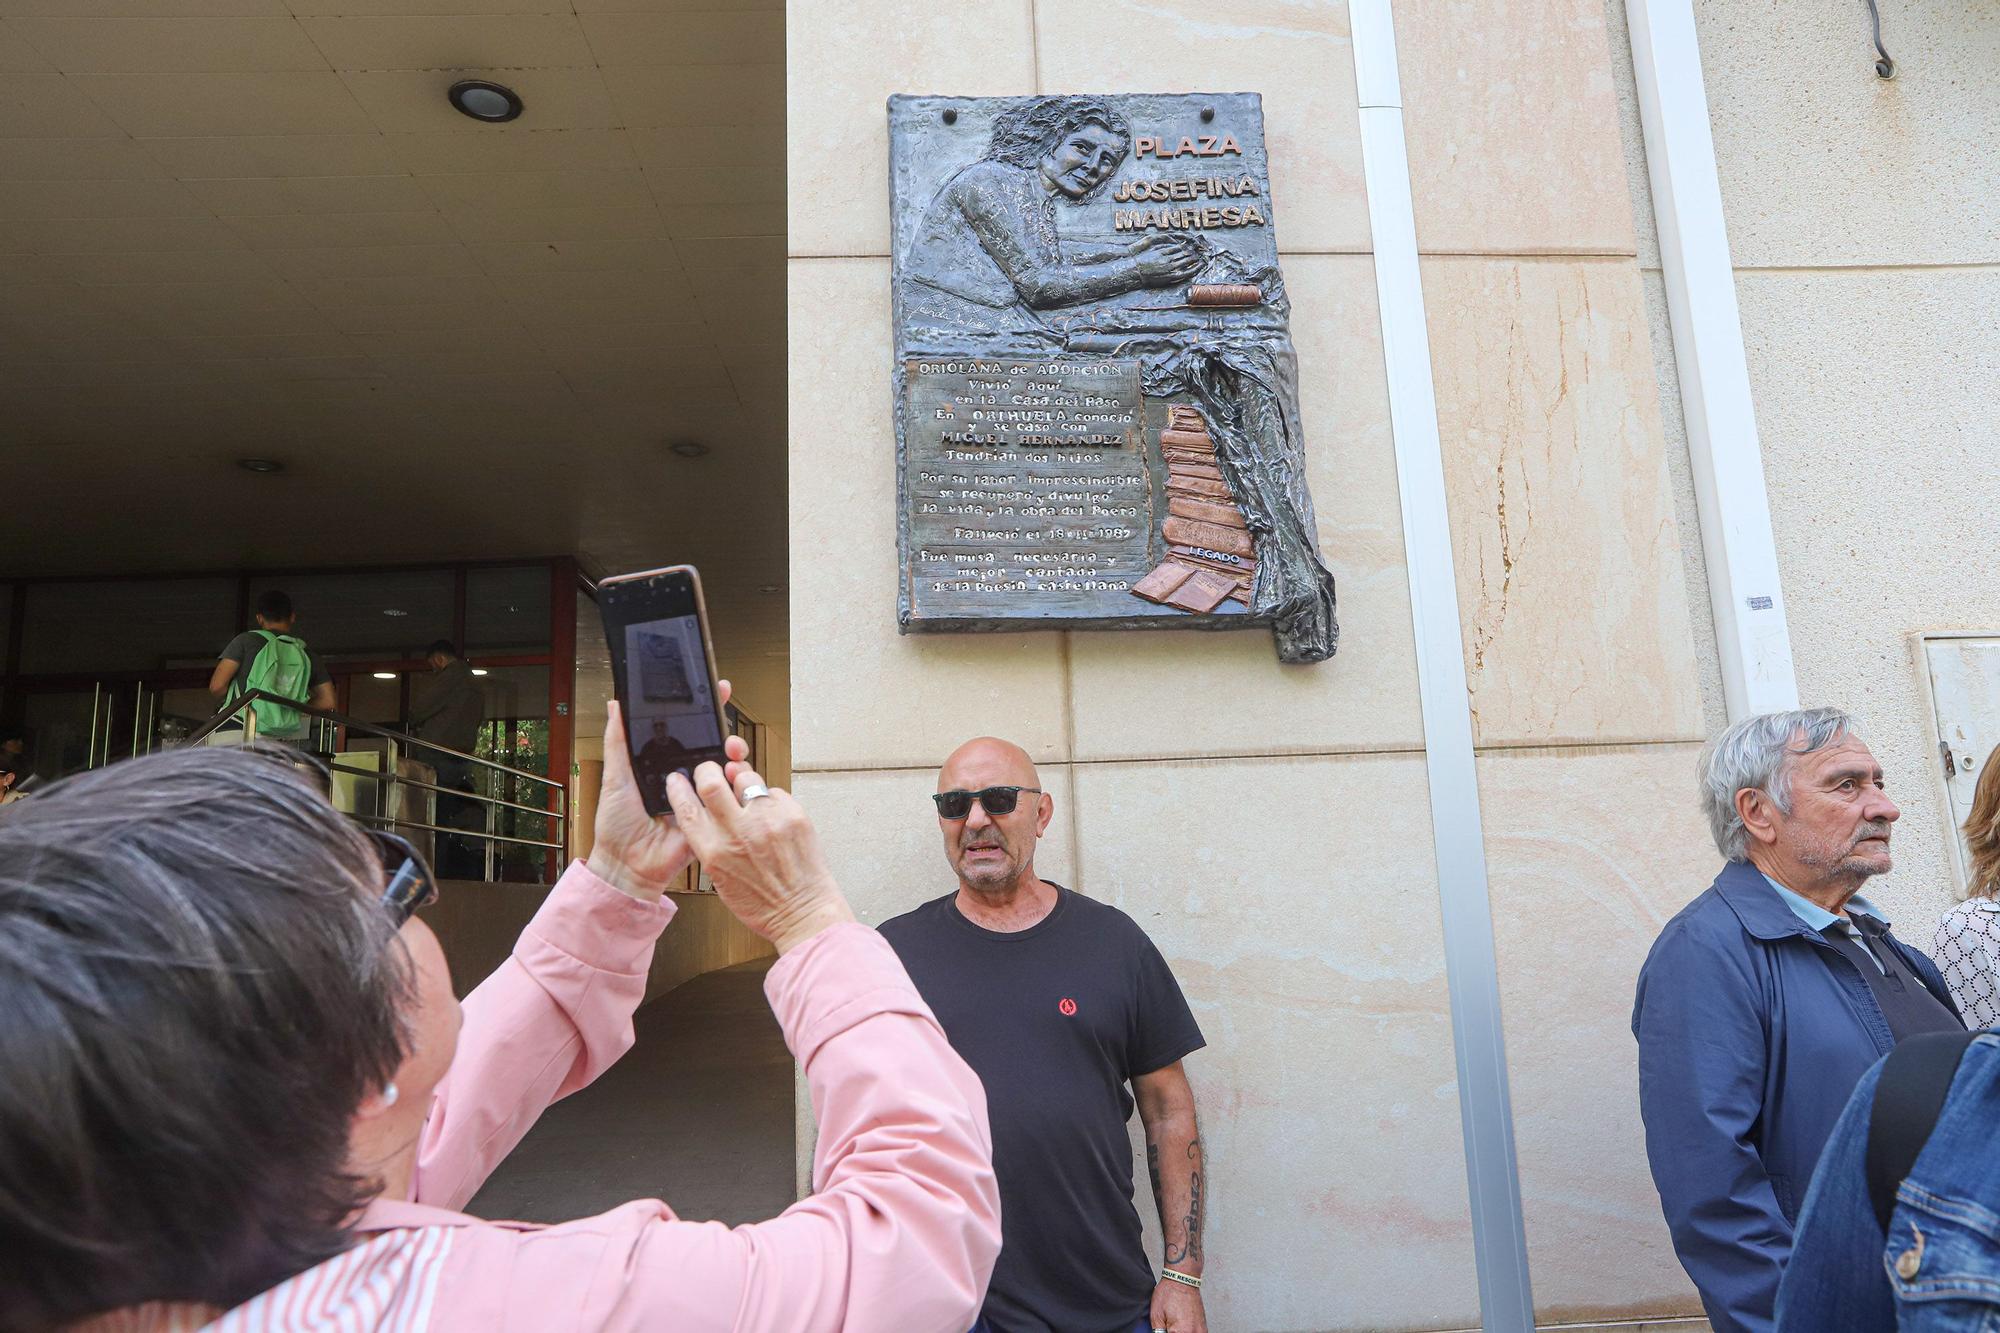 Orihuela le dedica una plaza en homenaje a Josefina Manresa